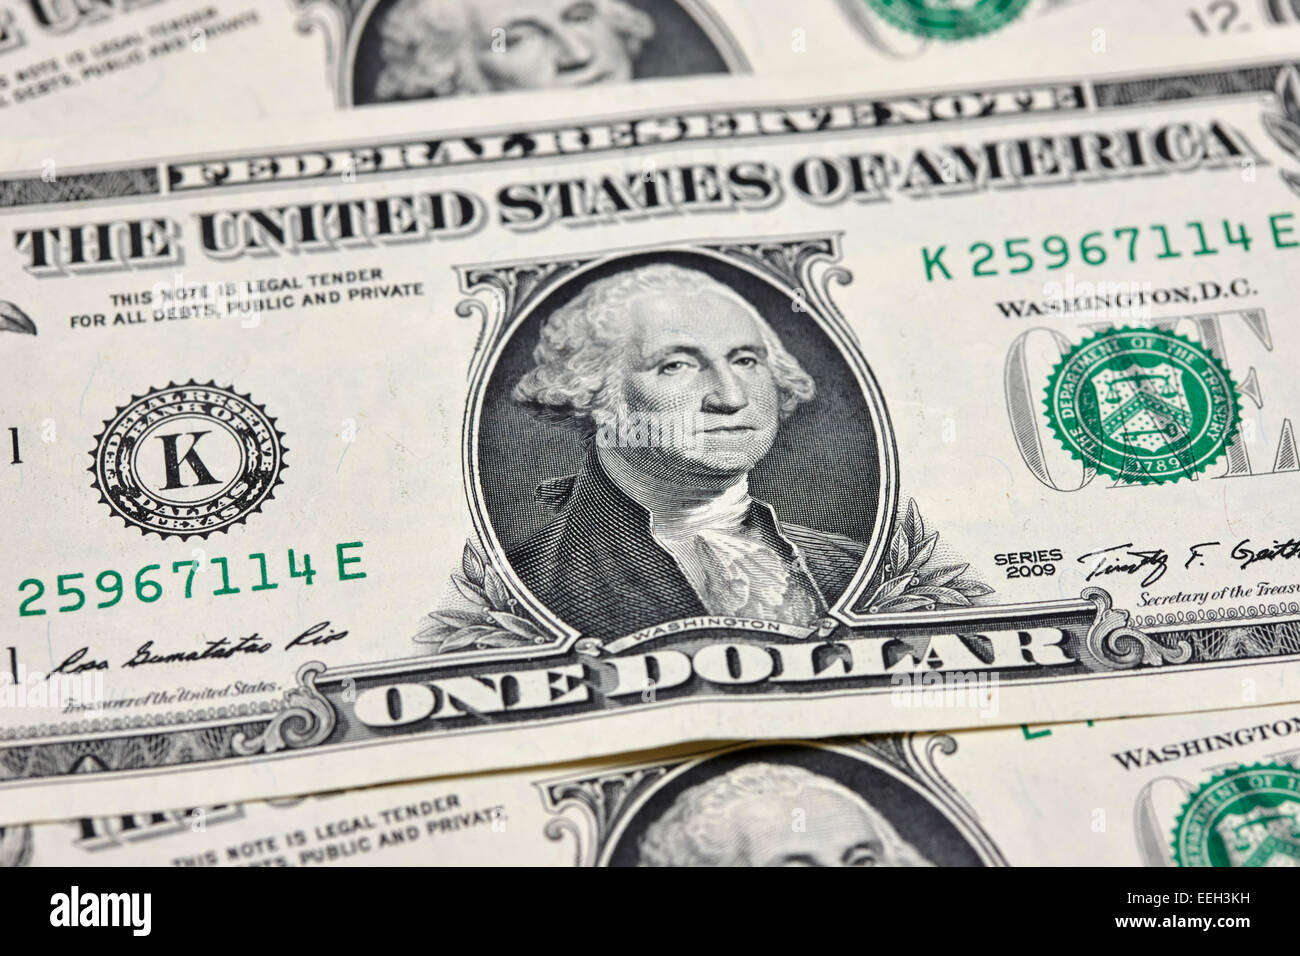 george washington on us dollar banknotes Stock Photo